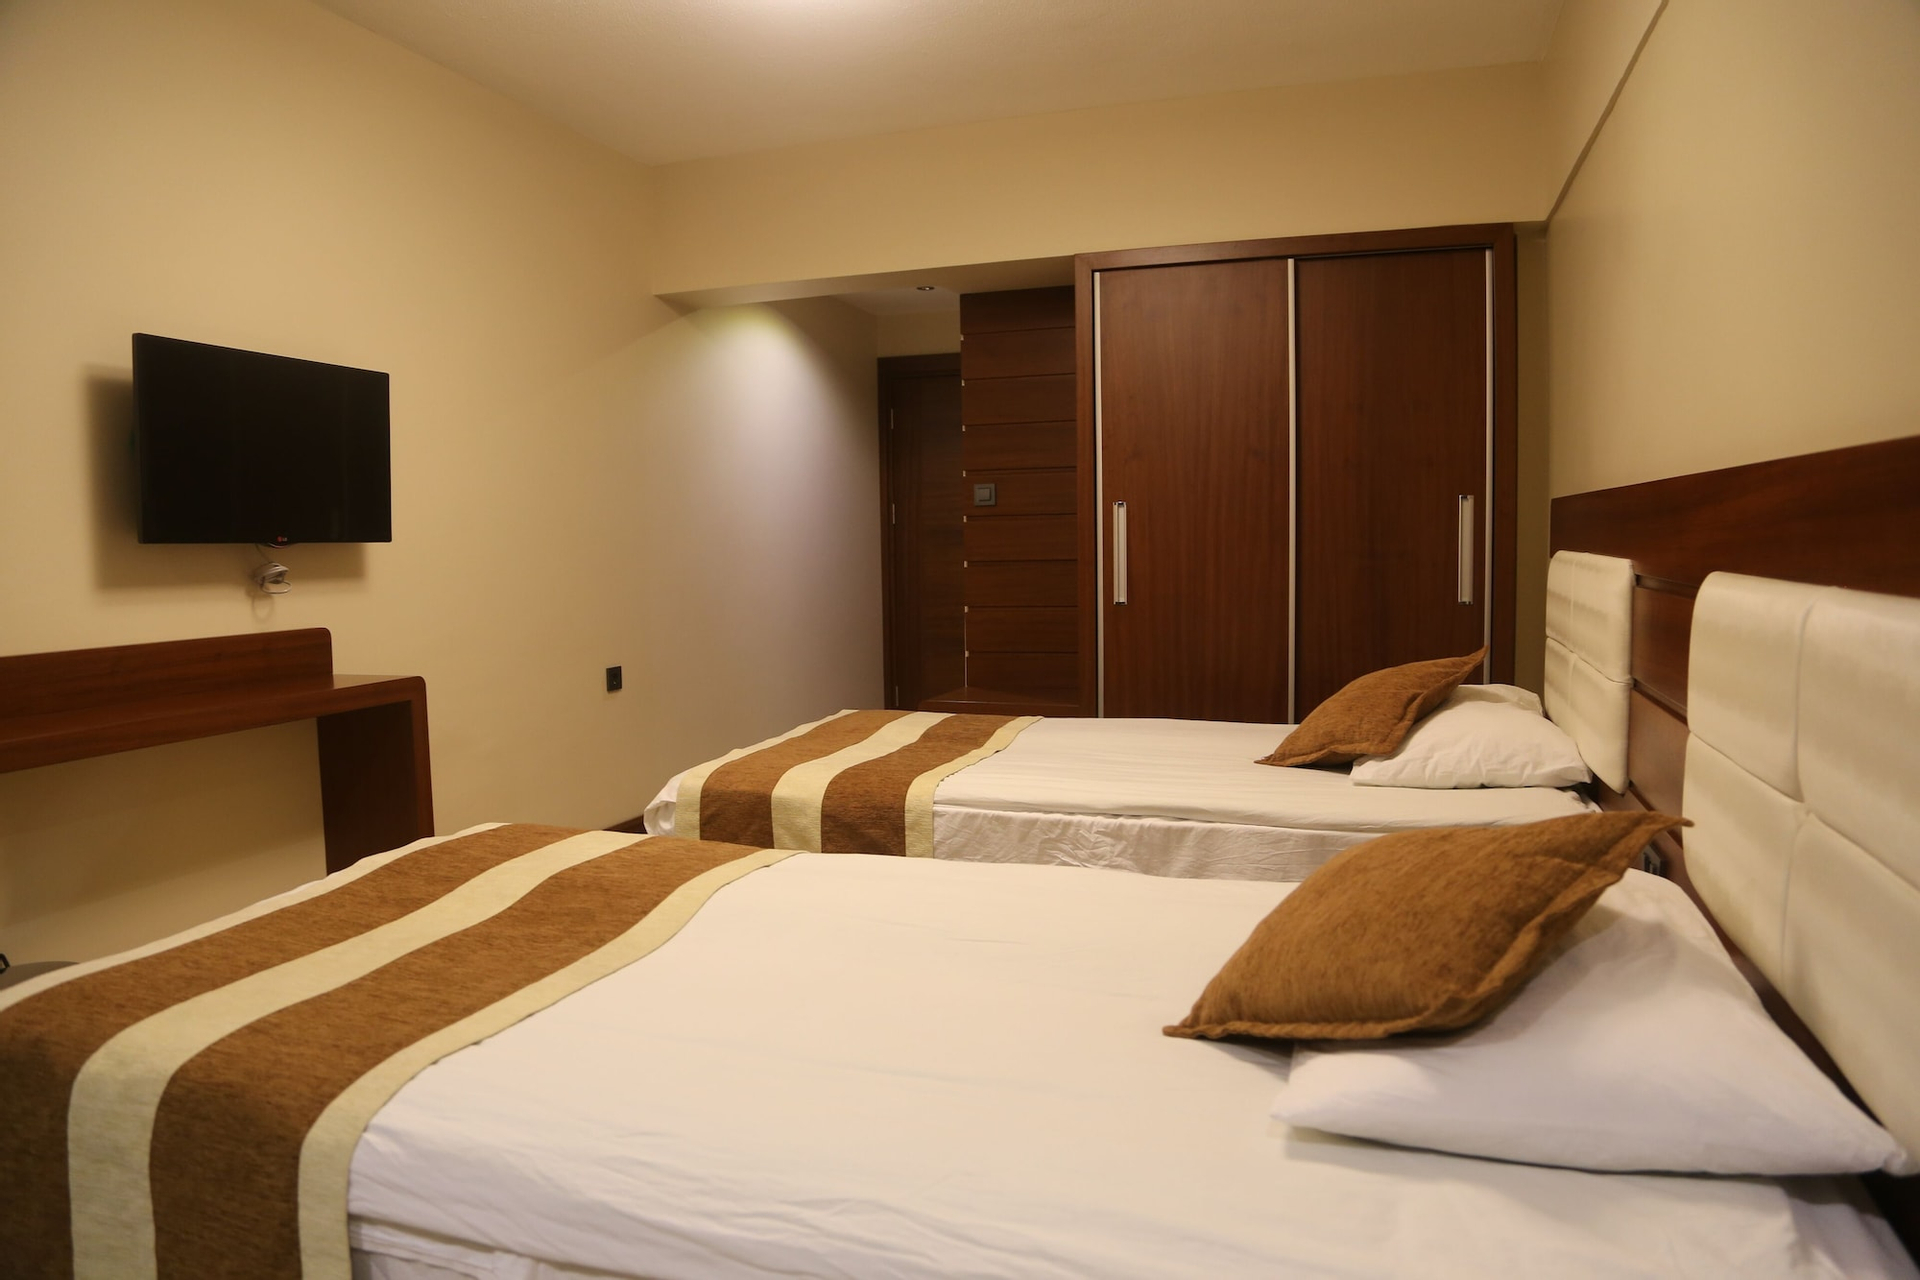 Bedroom 4, Camlicesme Hotel, Merkez